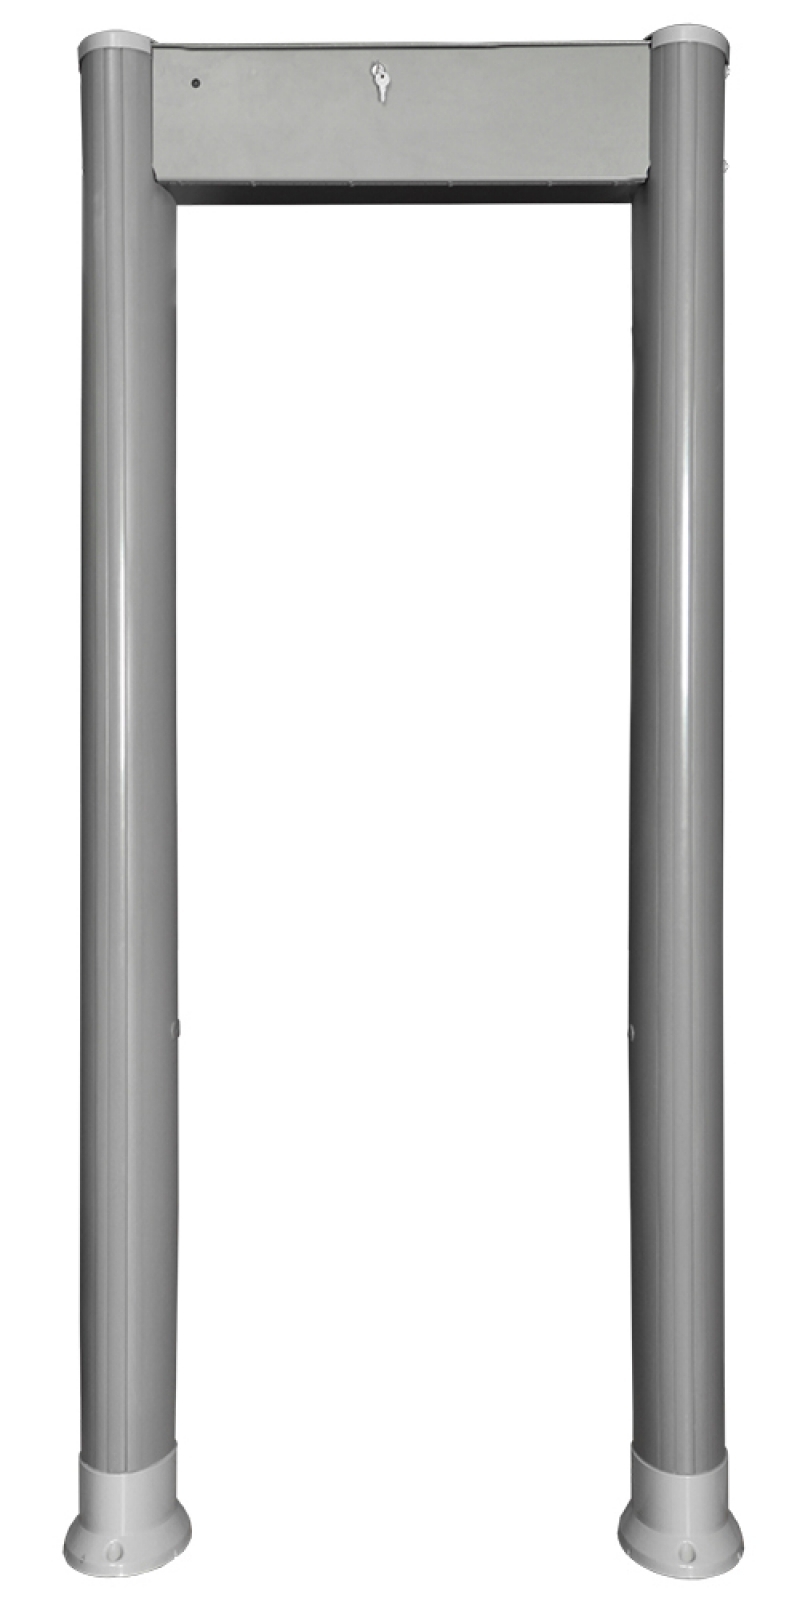 арочный металлодетектор блокпост рс-1100